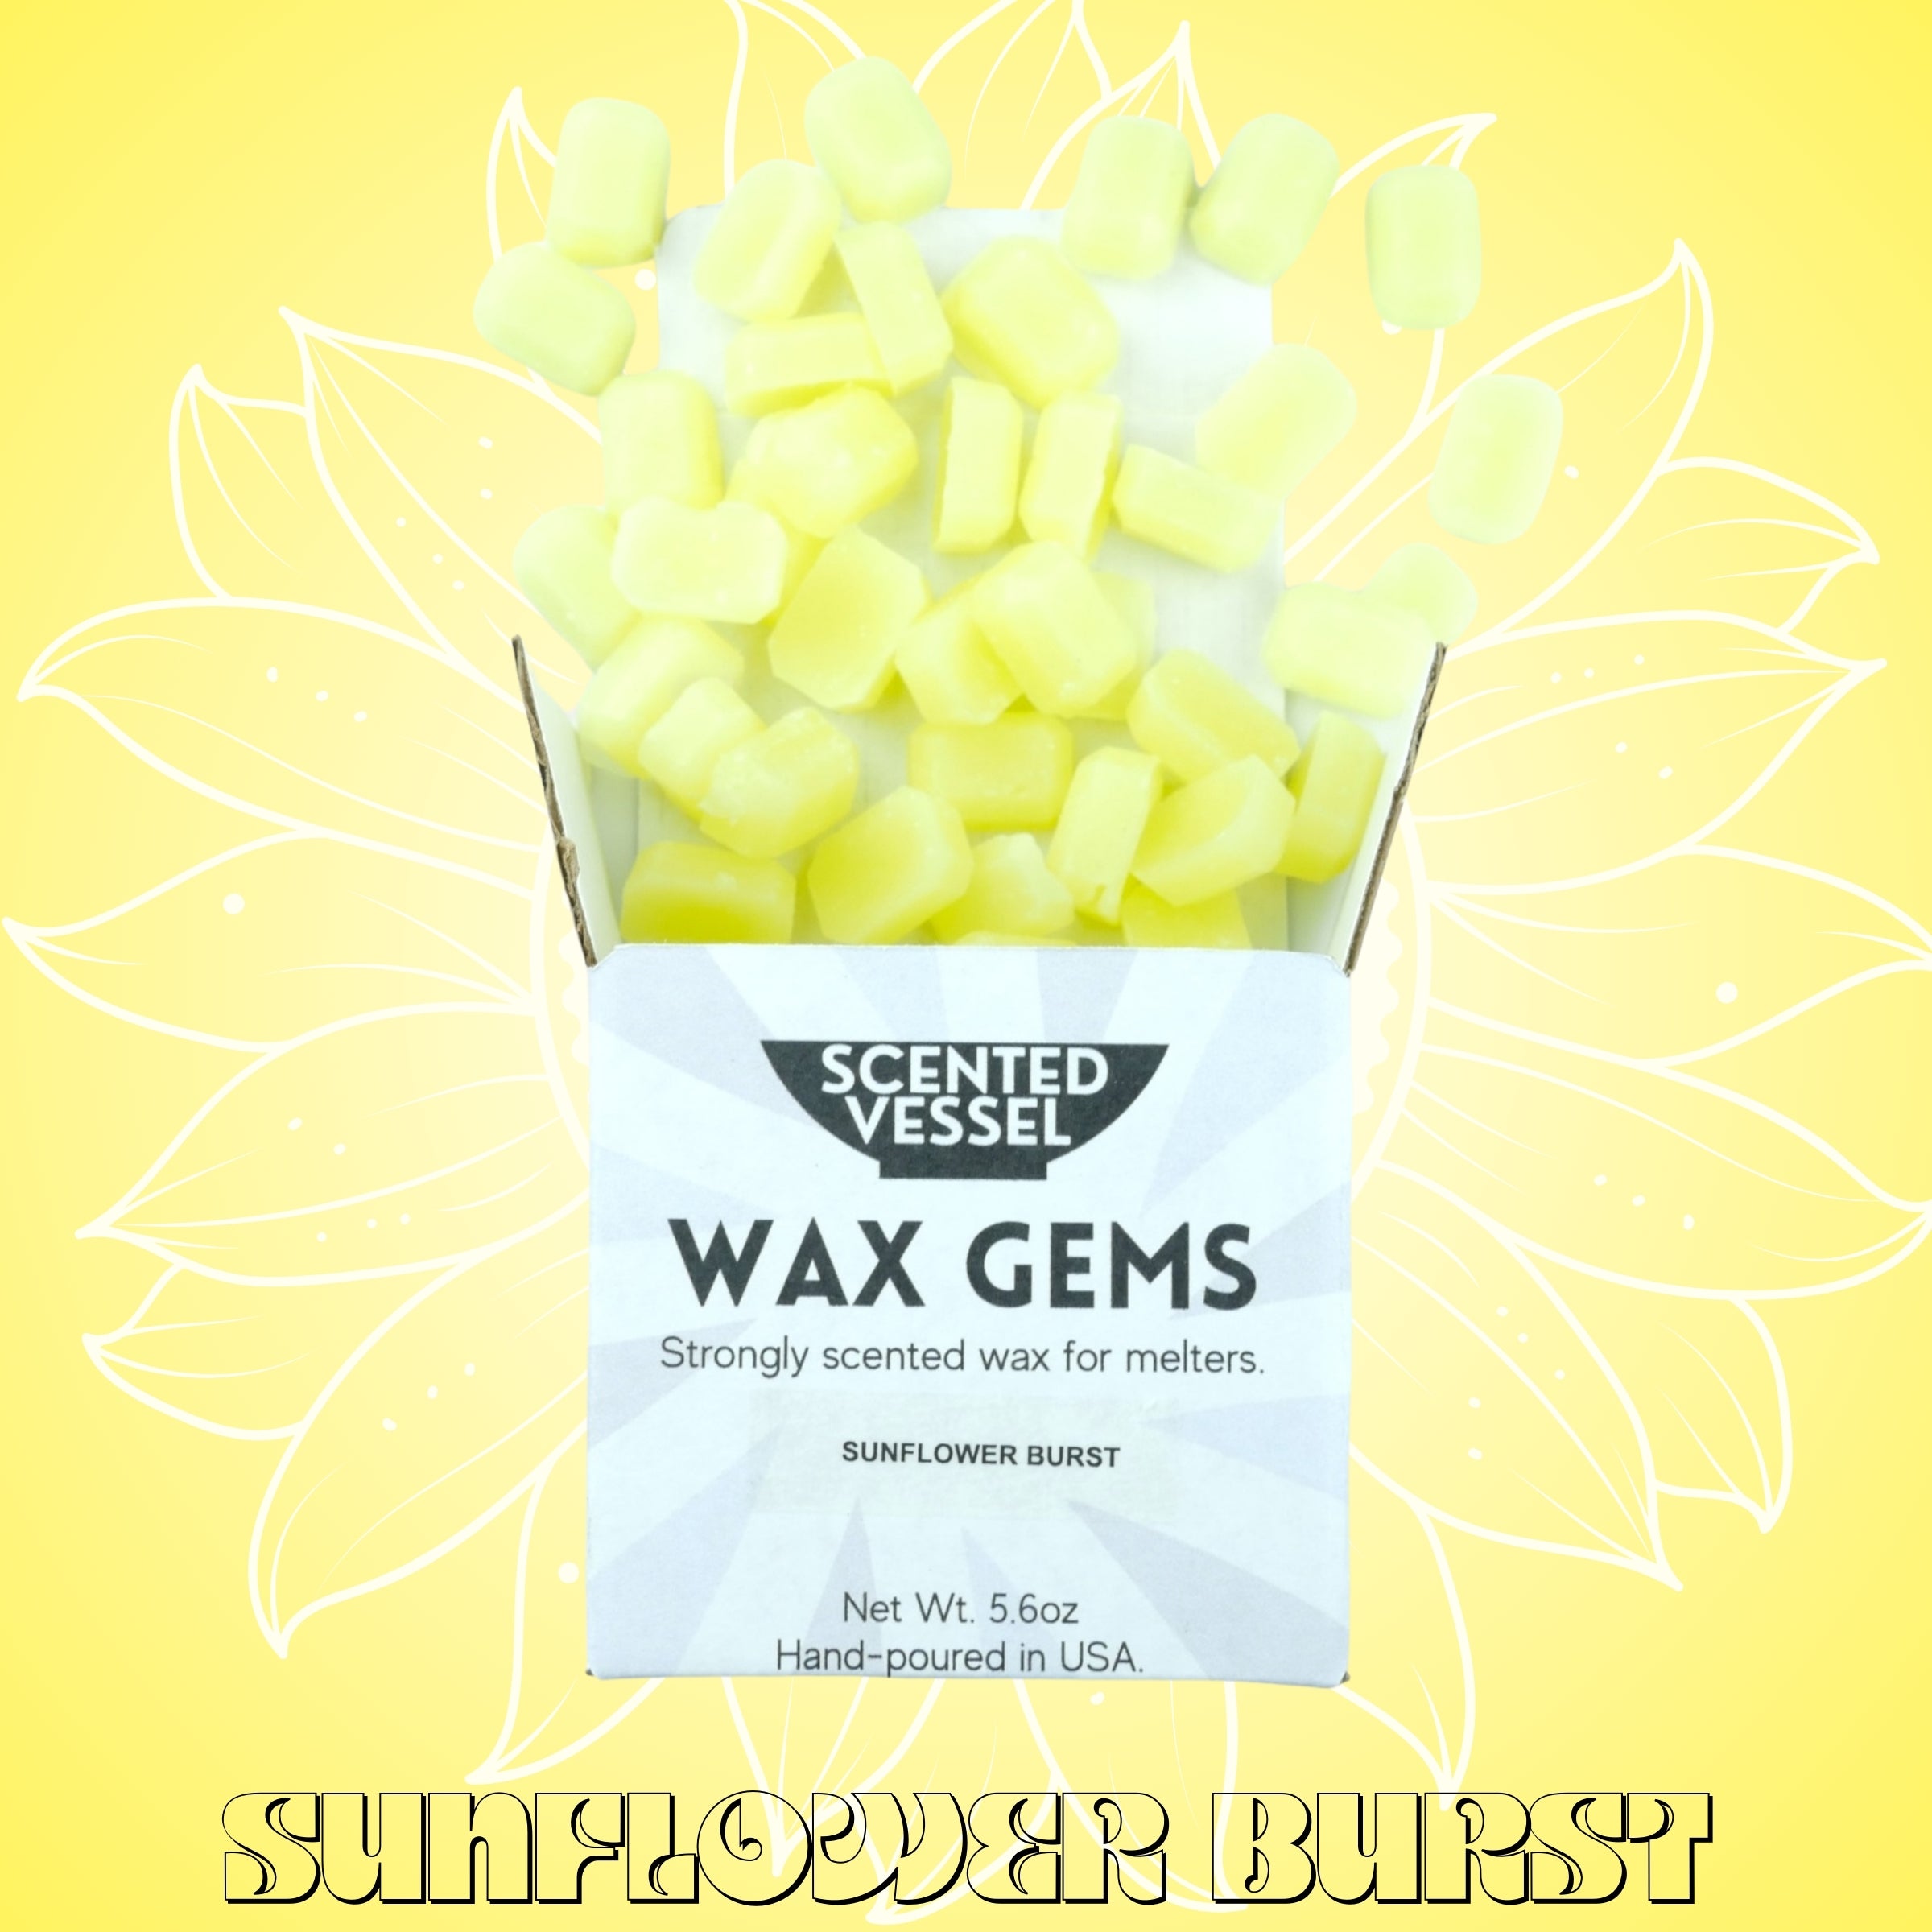 Sunflower Burst 5.6oz Wax Gems by Scented Vessel